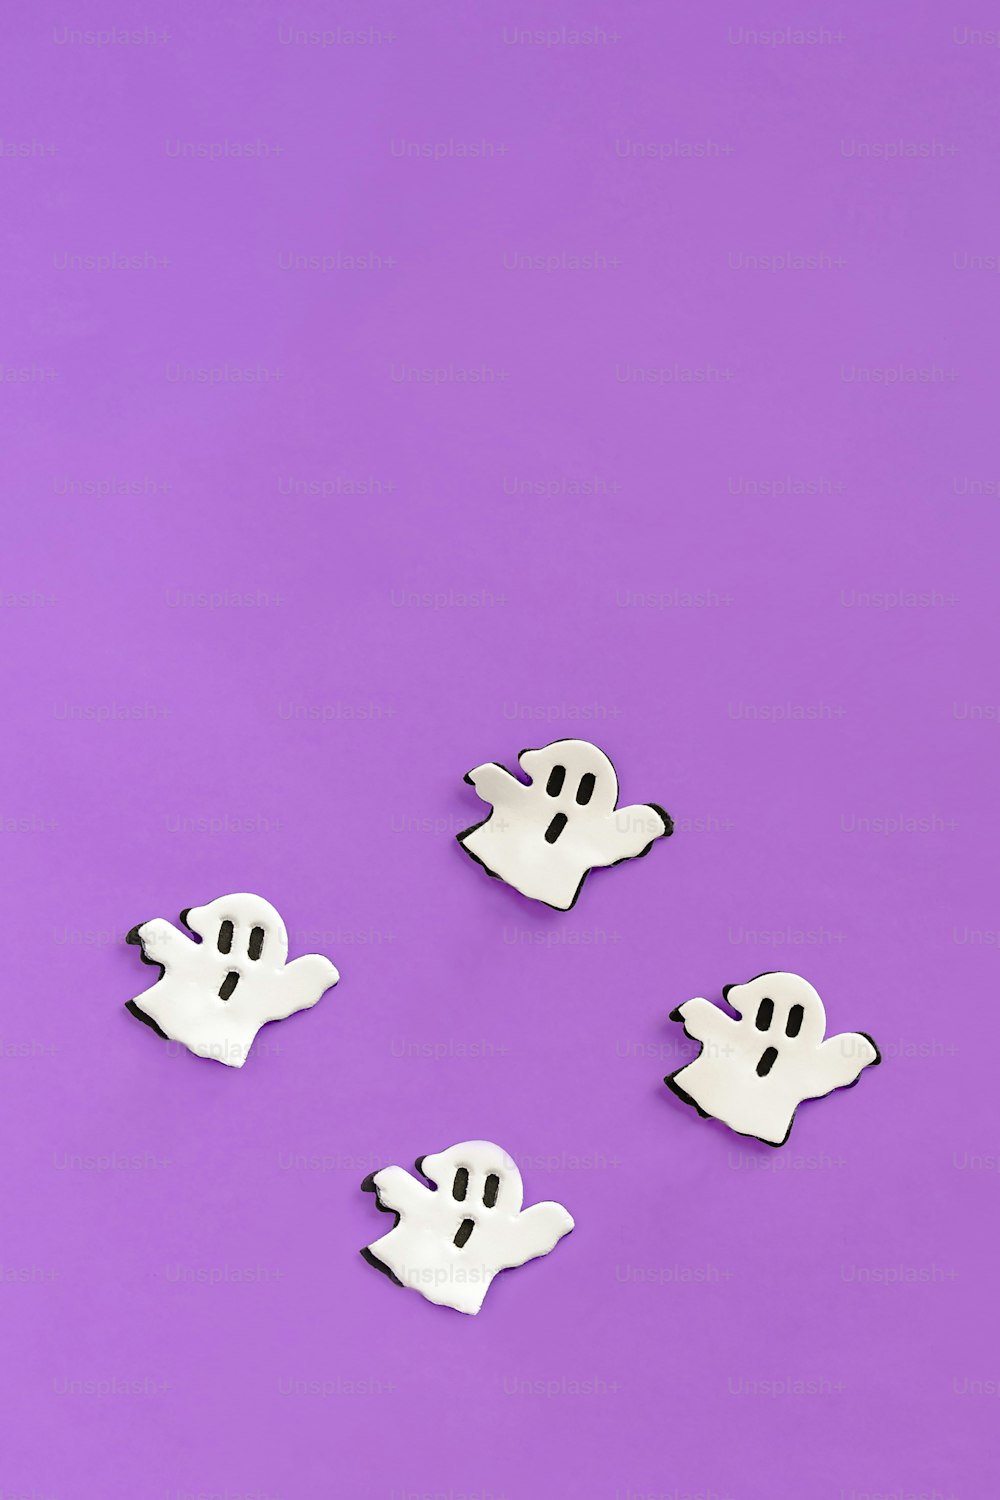 Un grupo de botones fantasma sentados encima de una superficie púrpura